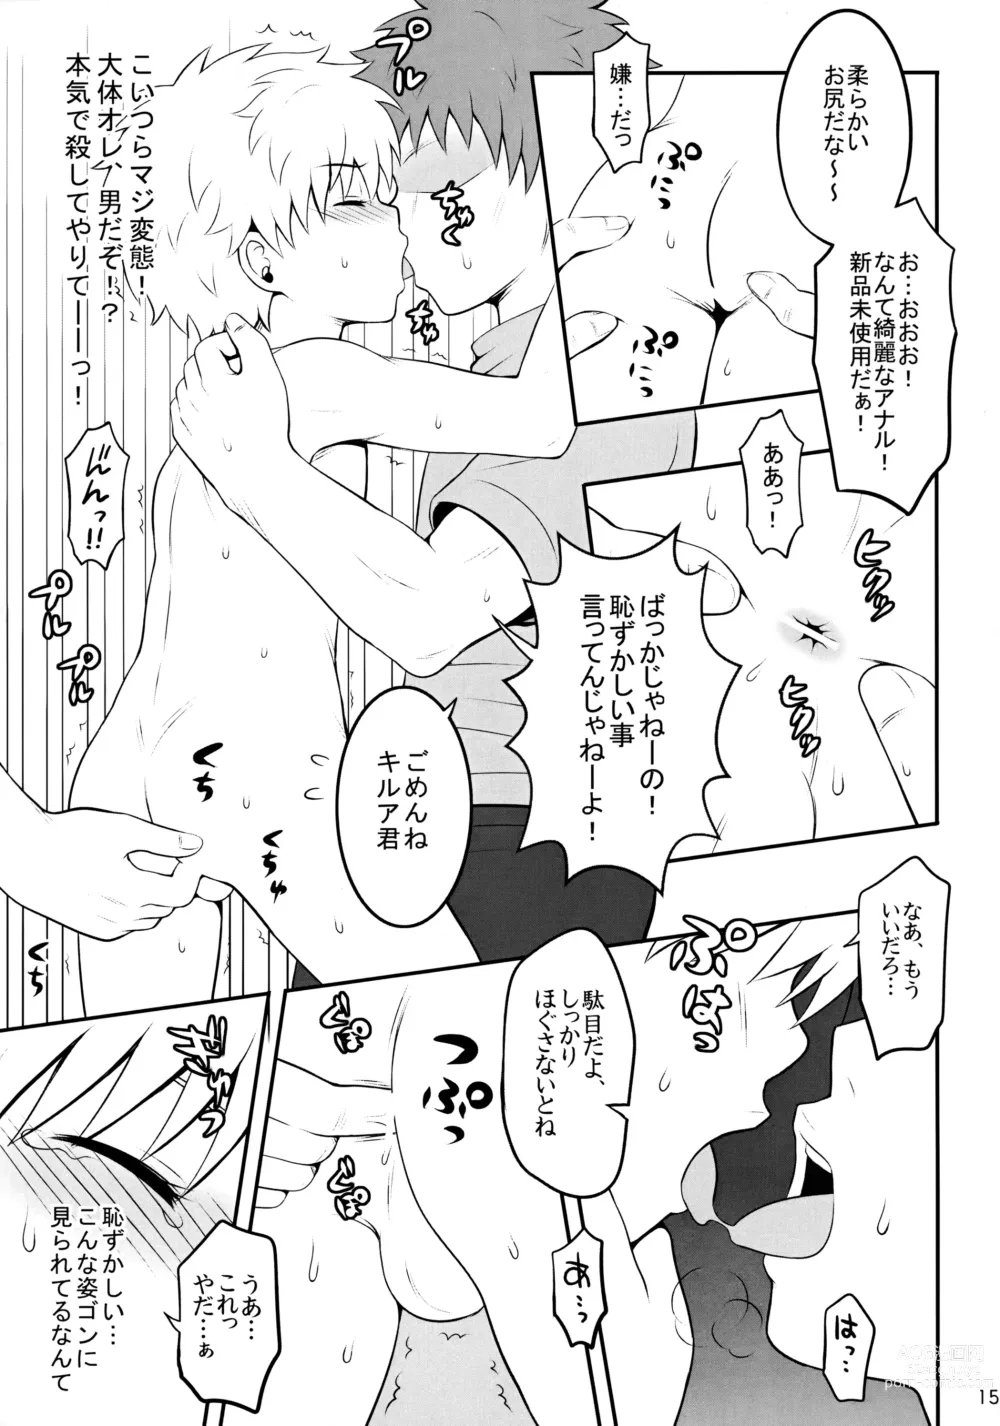 Page 14 of doujinshi Sannan ga Ecchi na Jouken Kyoubai ni Deru Ohanashi.